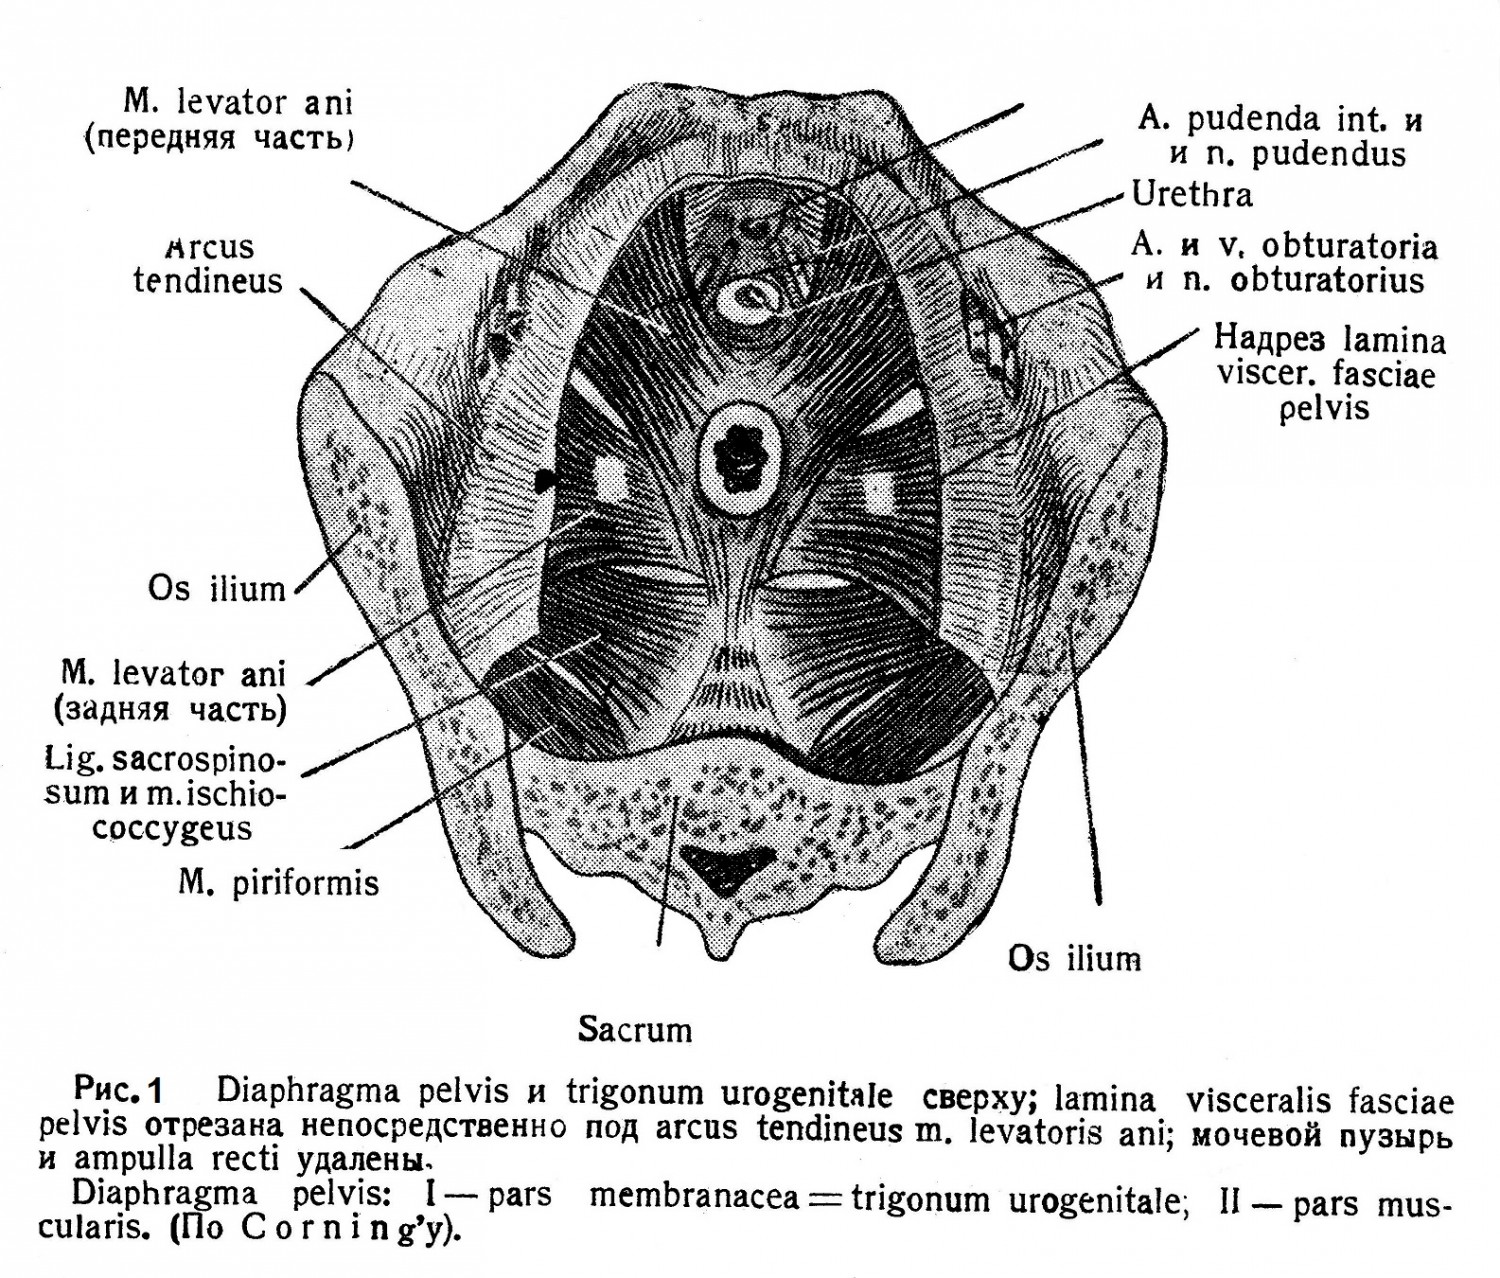 Diaphragma pelvis и trigonum urogenitale